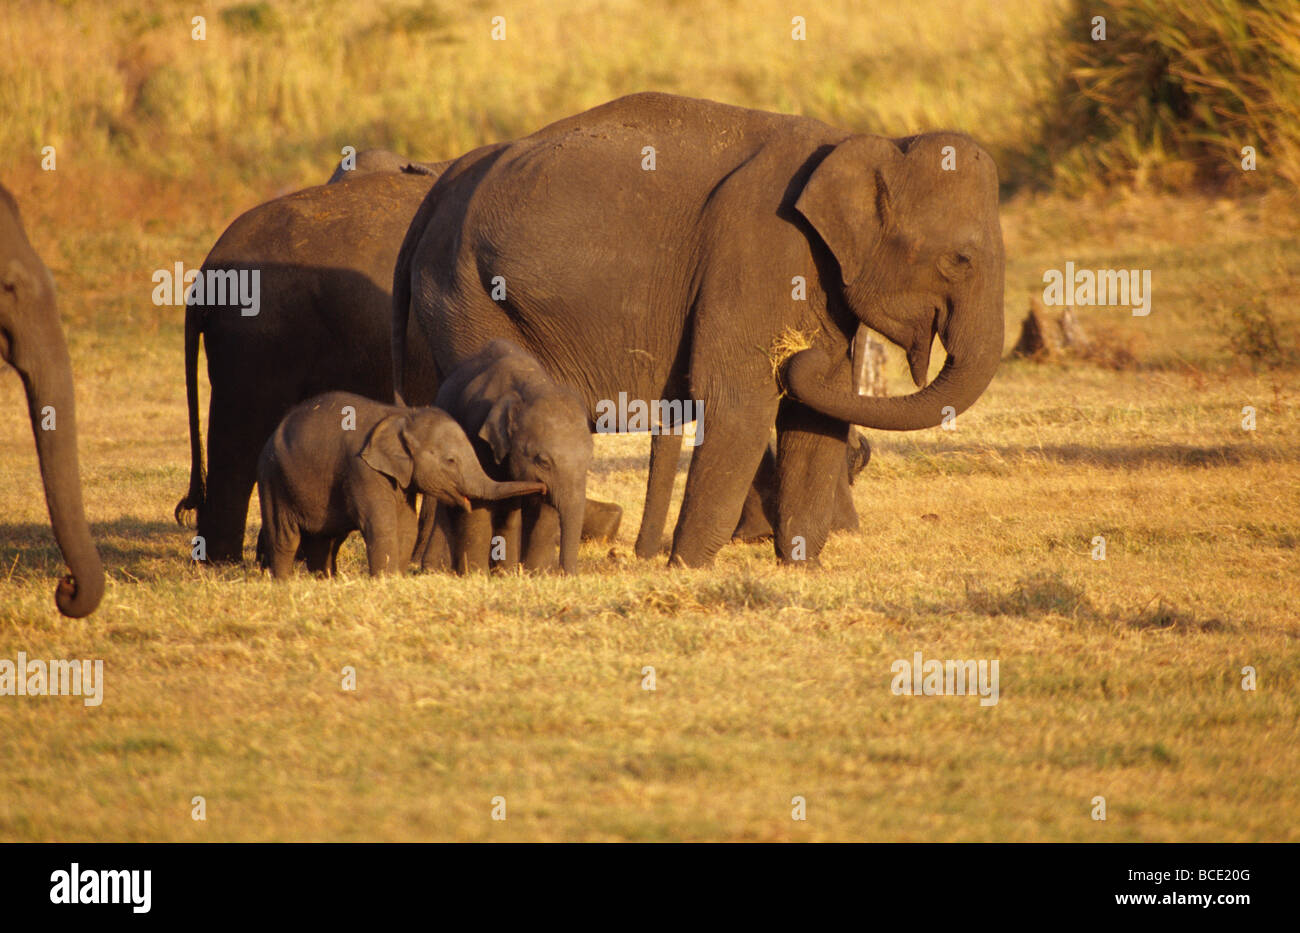 Un pequeño elefante asiático toca otro BECERRO BECERRO con su tronco. Foto de stock